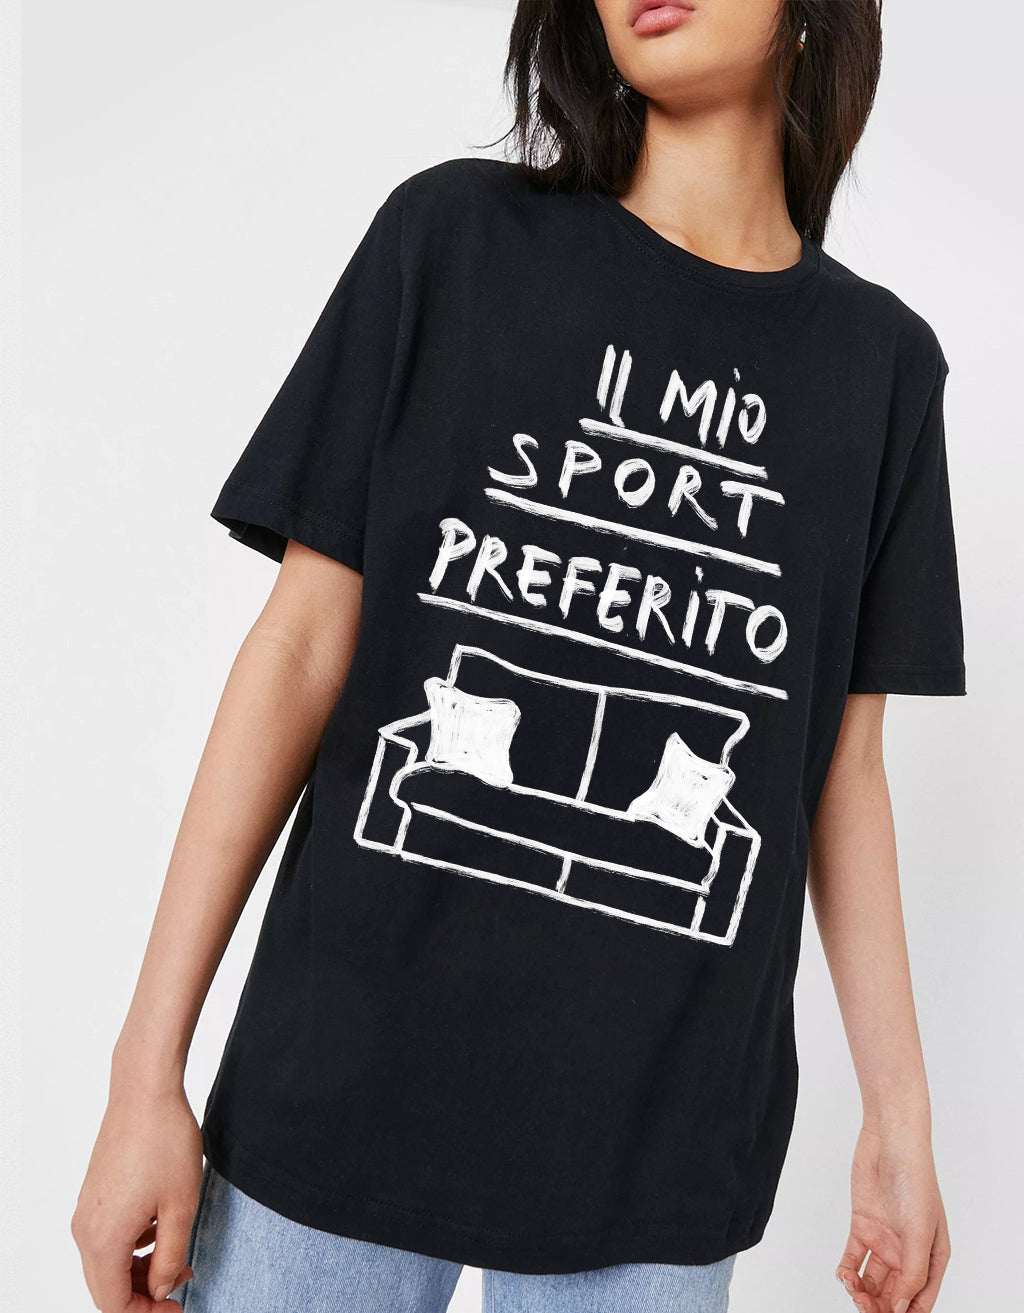 T-Shirt  "Il mio sport preferito"